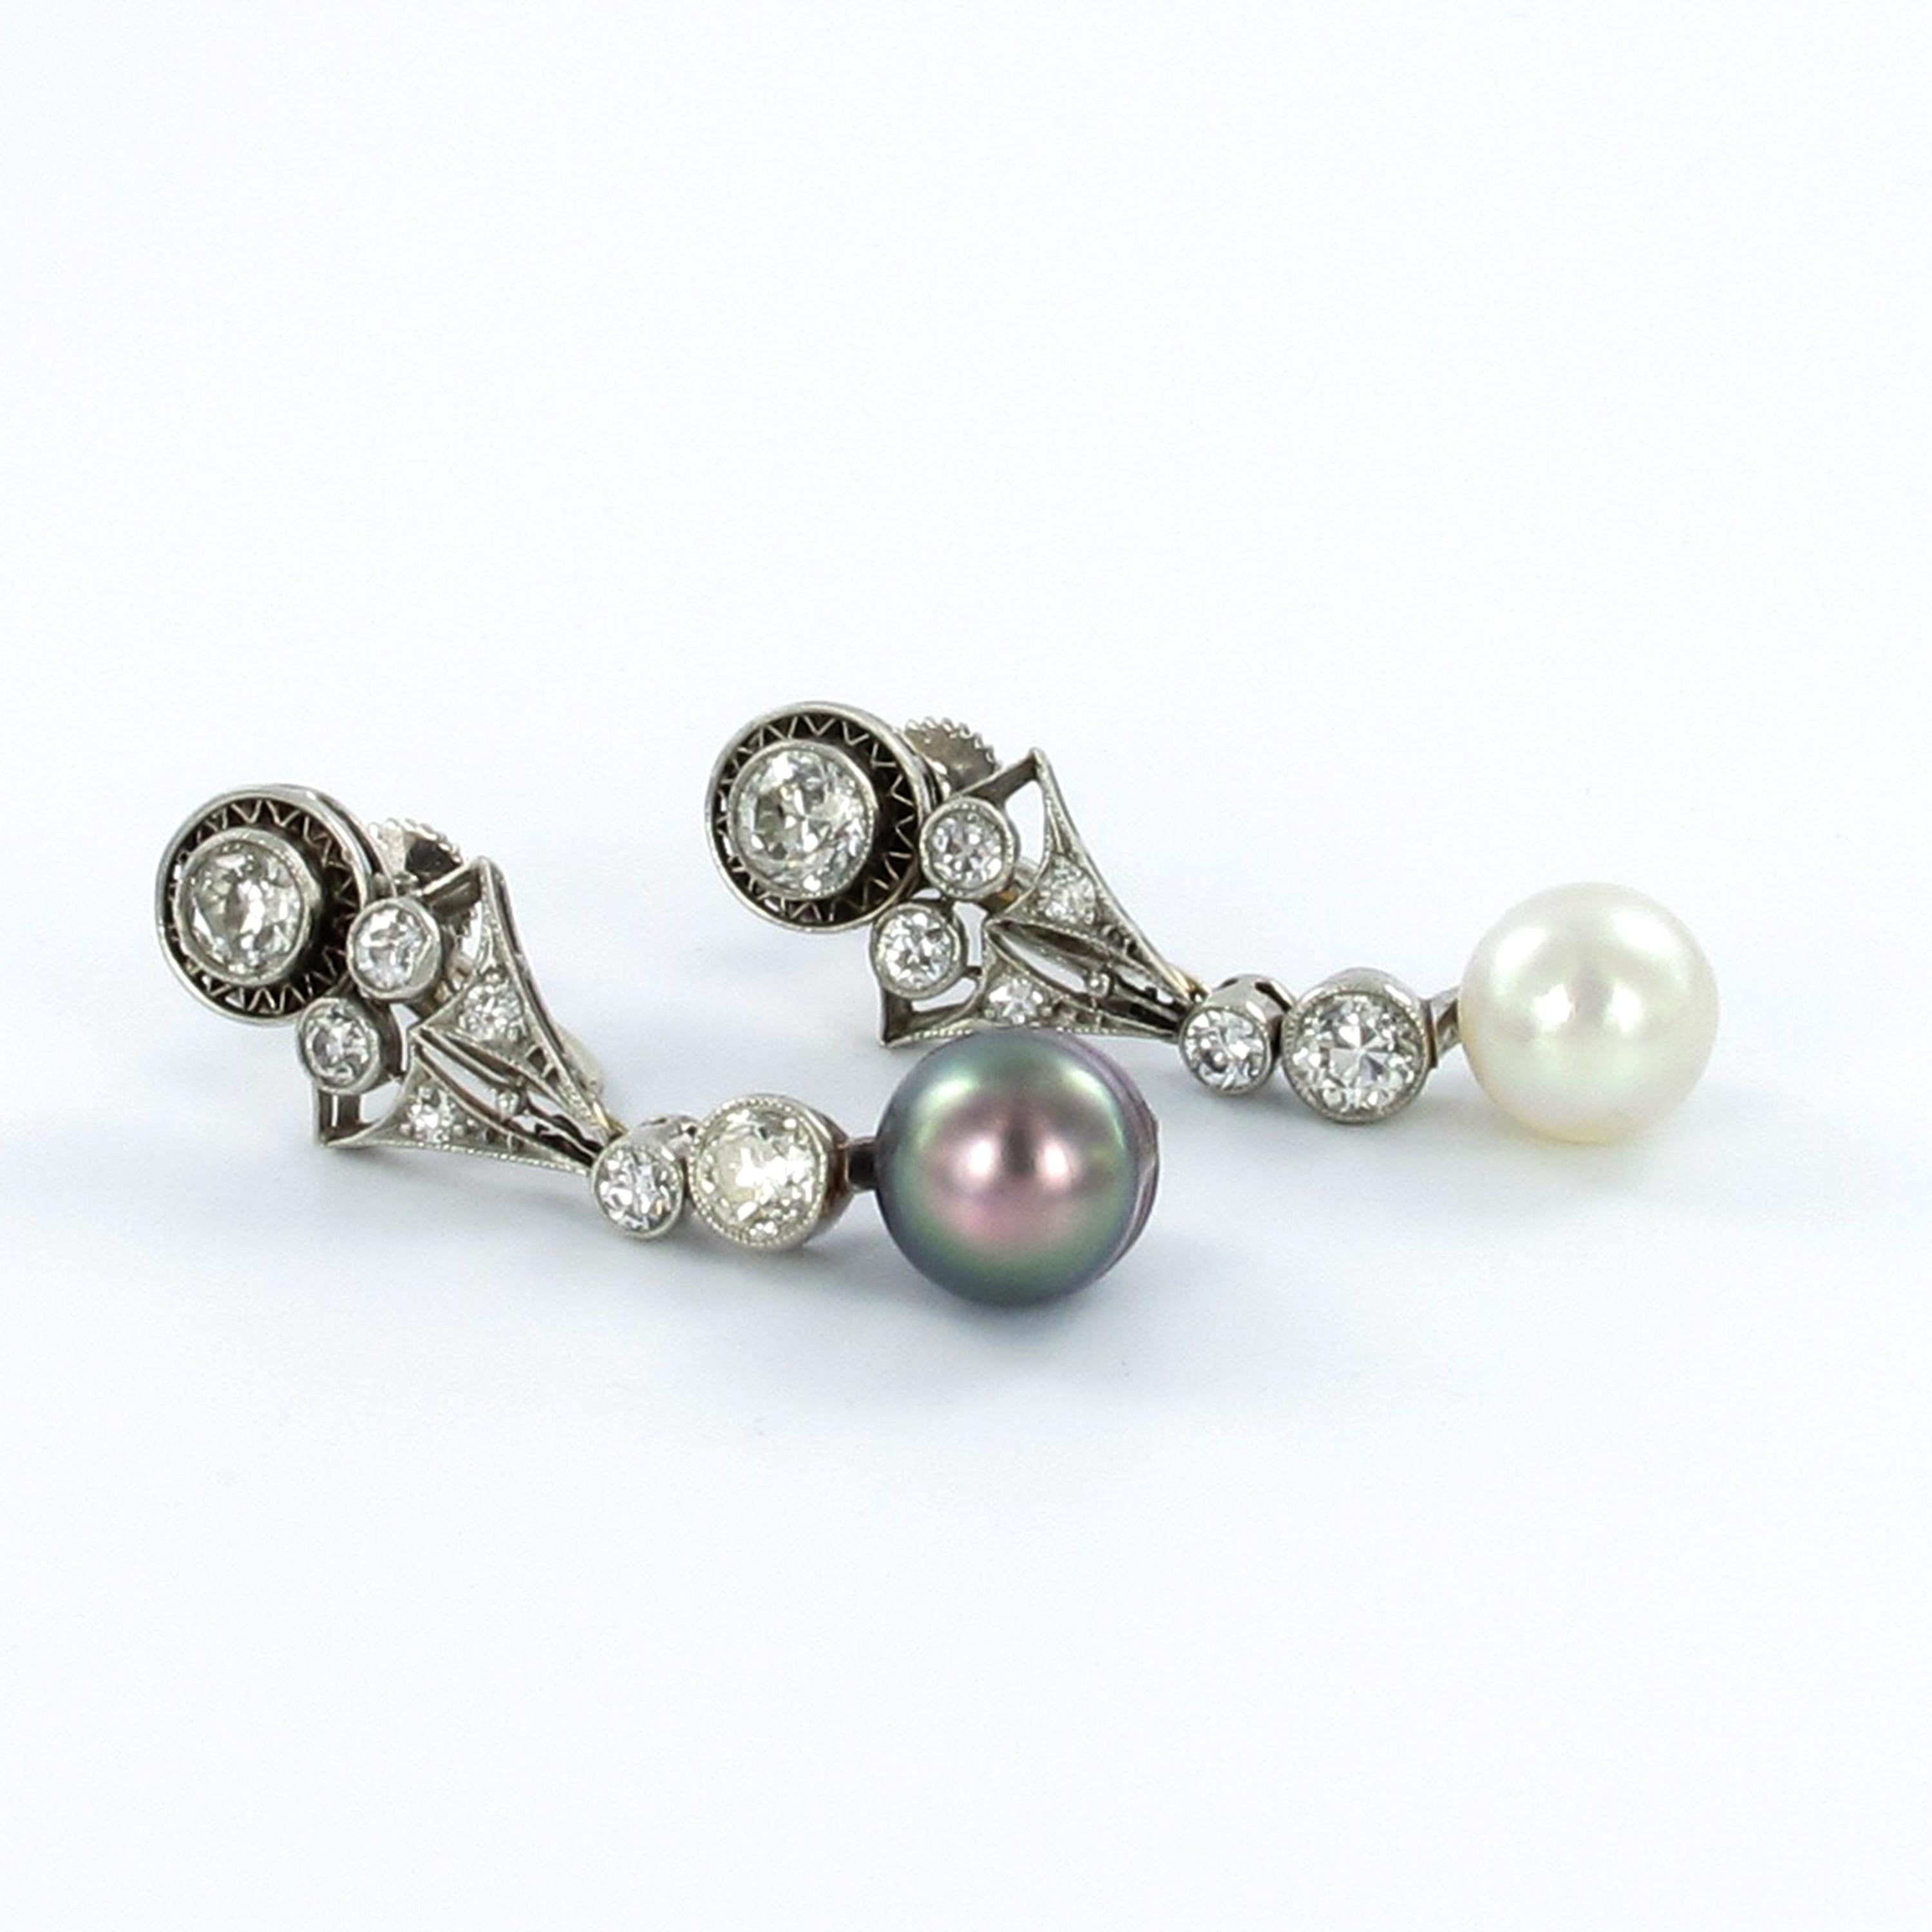 Magnifiques boucles d'oreilles Art Déco en platine 950. Le bijou est serti d'une perle d'eau salée naturelle blanche et d'une grise. Les perles sont certifiées par Gübelin Gem Lab. Les diamètres des perles sont de 7,7 et 7,8 mm.
Les boucles